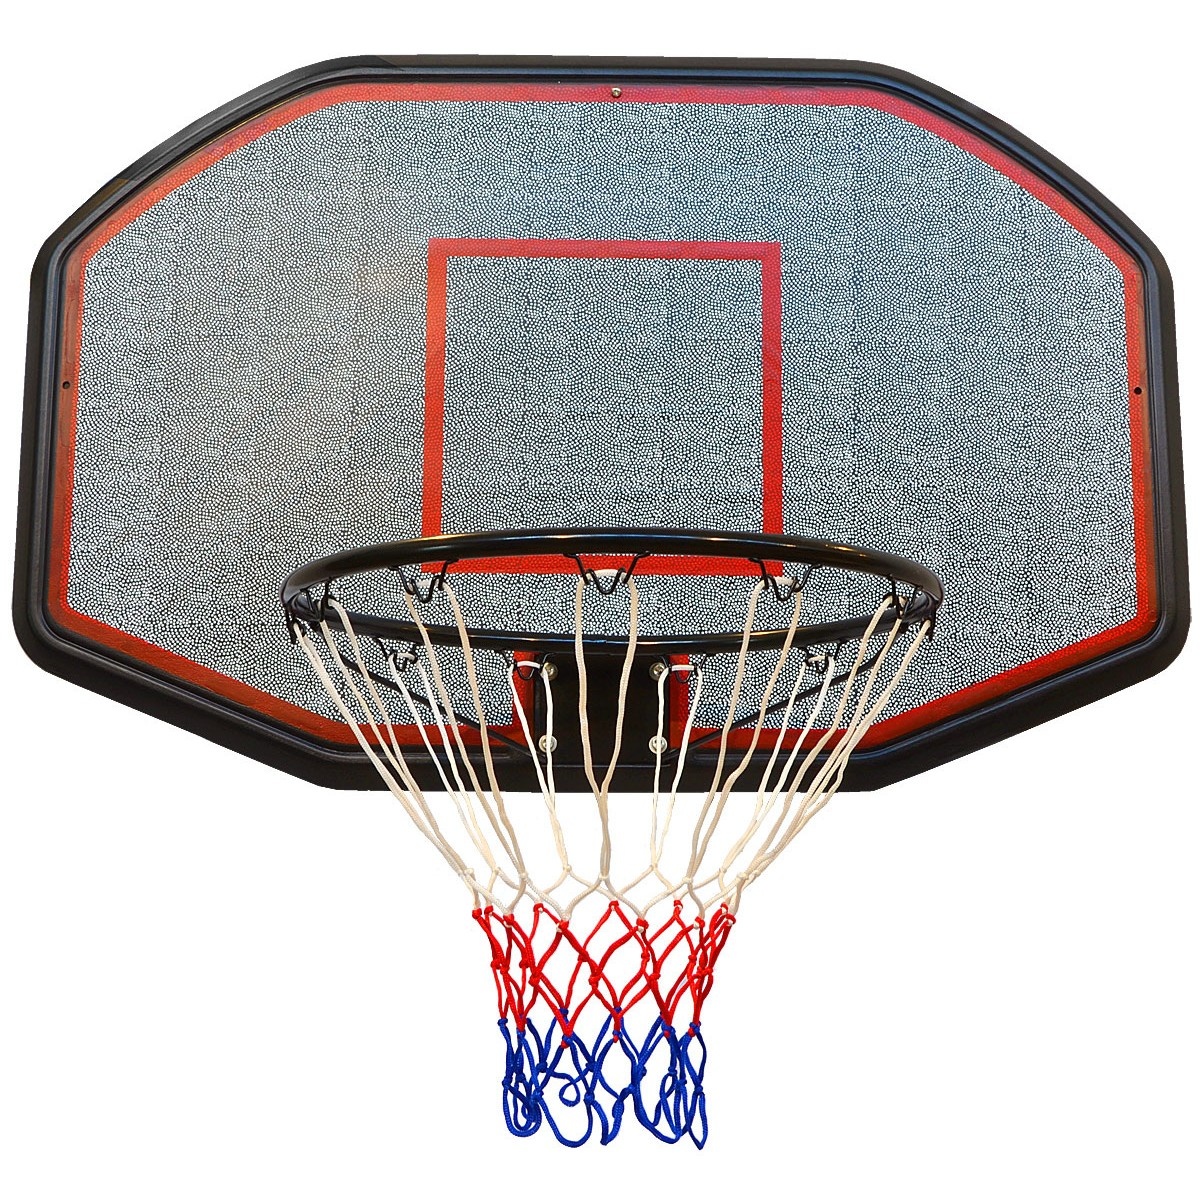 anders metriek Riskant Viking Choice Basketbalpaal staand 140-220 cm - Verstelbaar - Basketbalring  - VC-Lifestyle